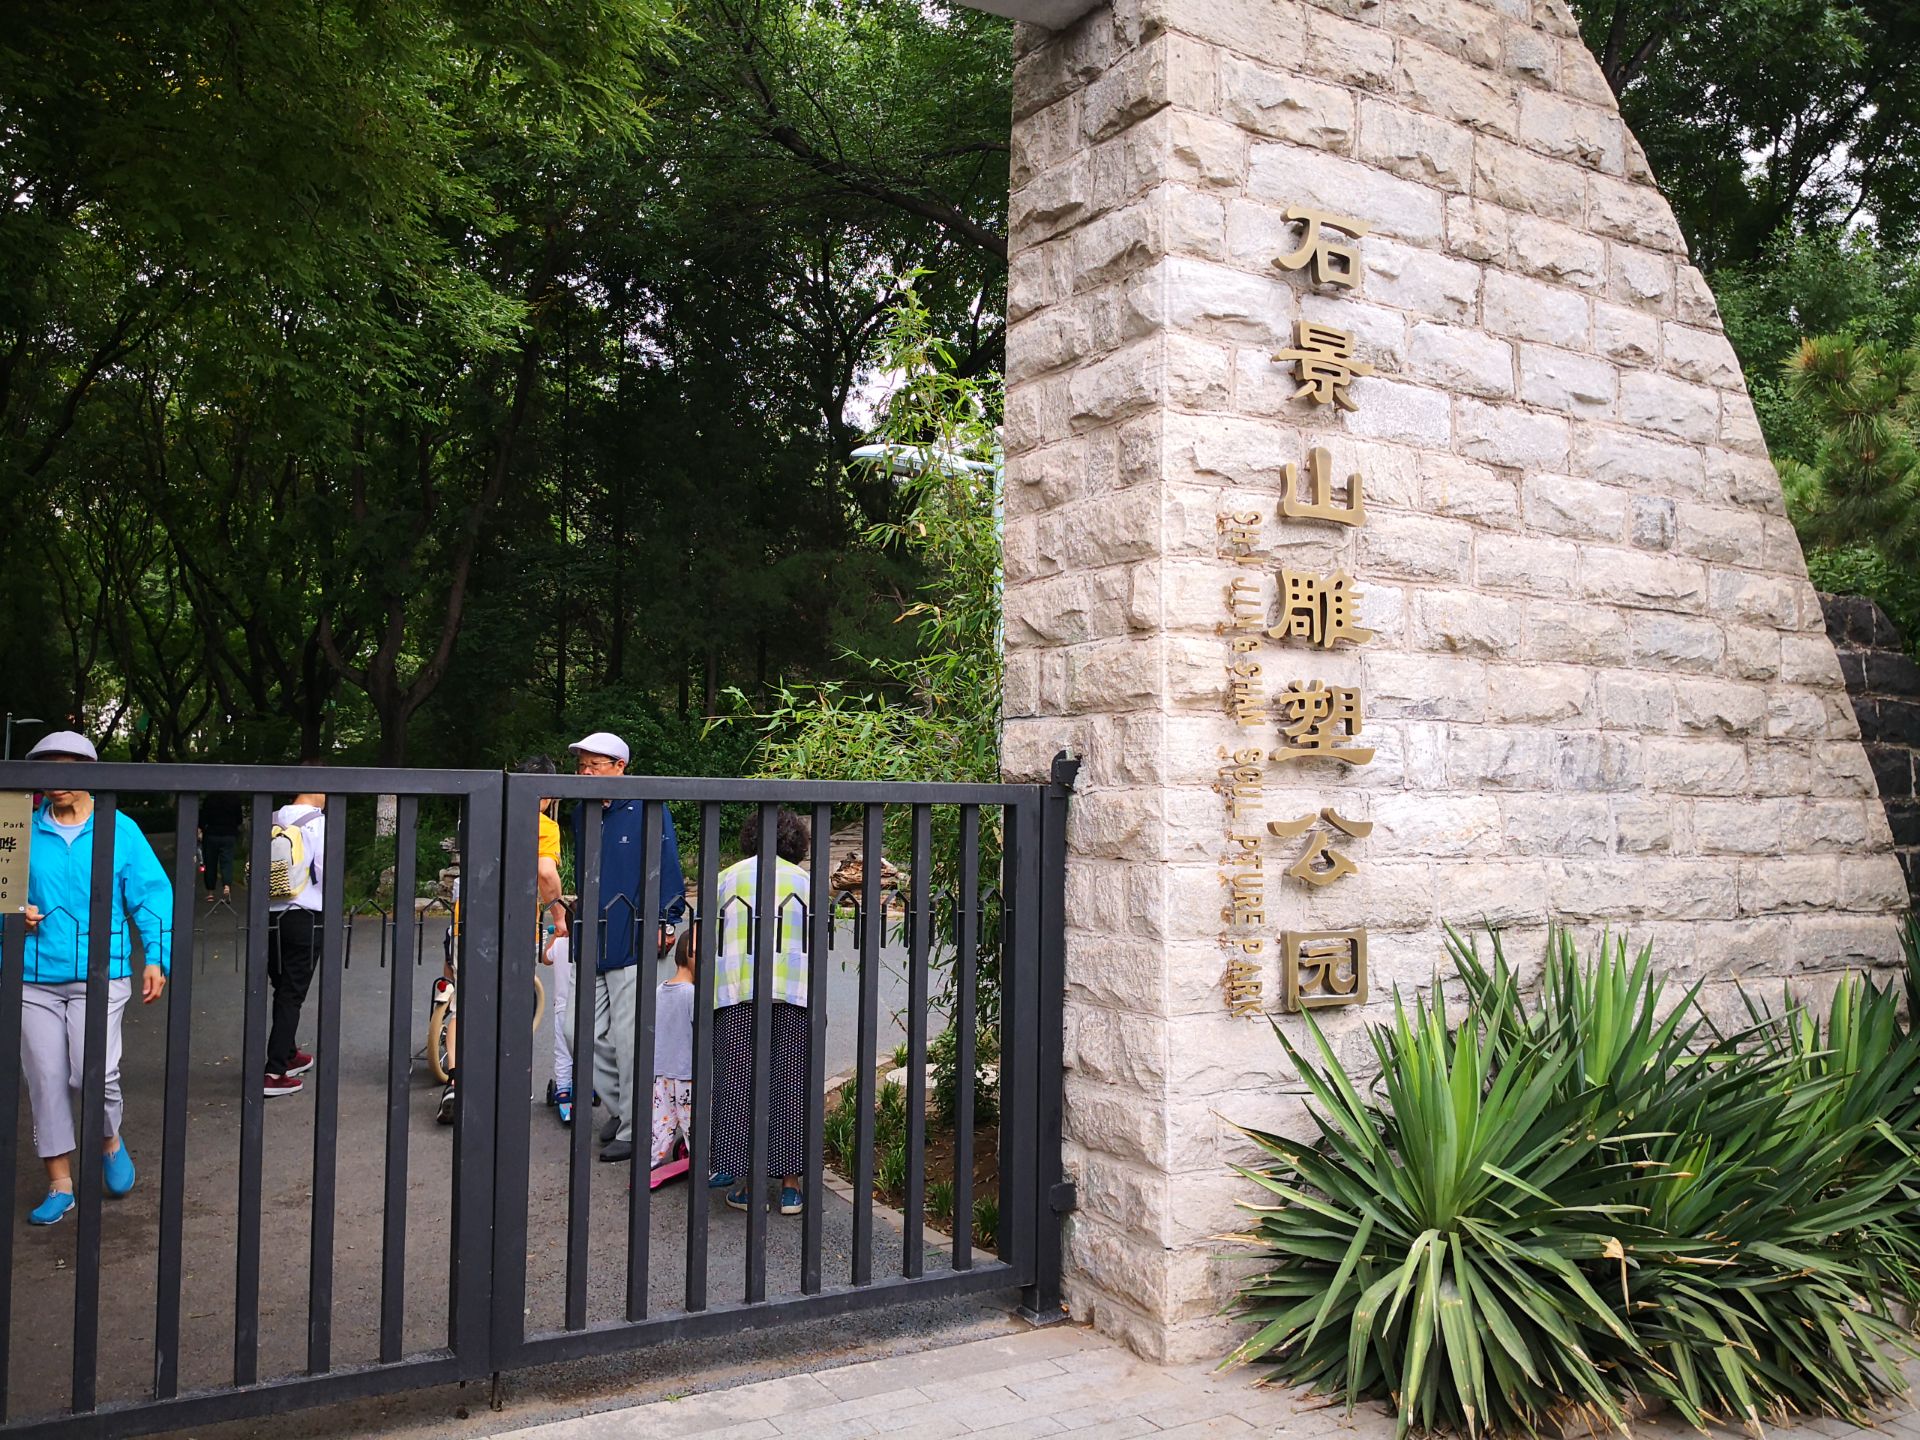 北京公园石景山图片